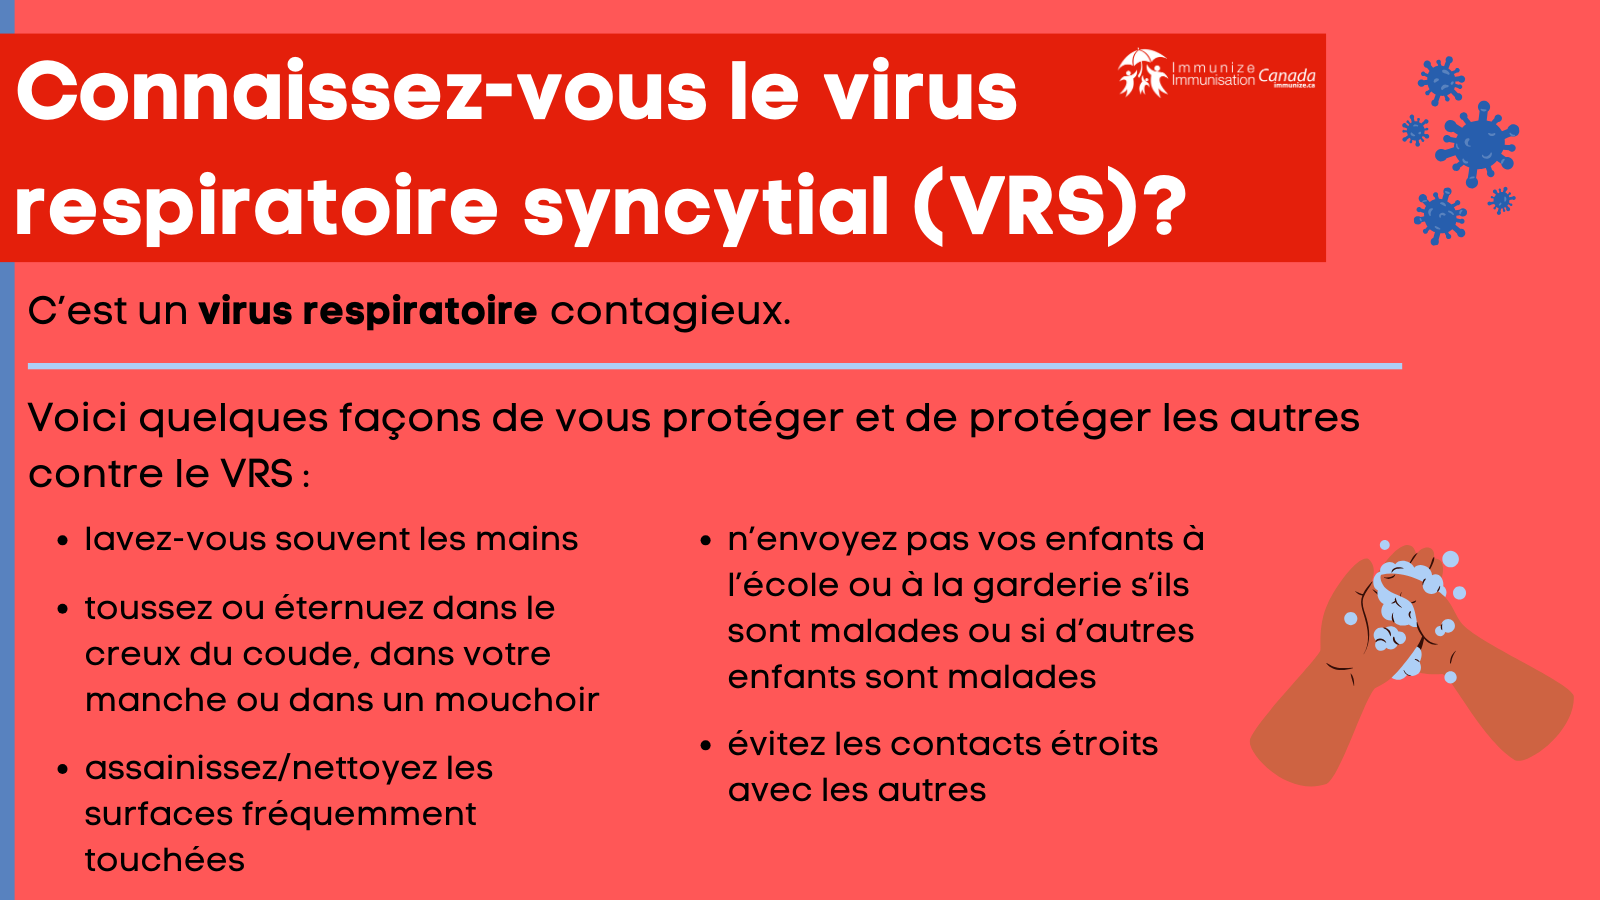 Connaissez-vous le virus respiratoire syncytial (VRS)? - image 4 pour Twitter